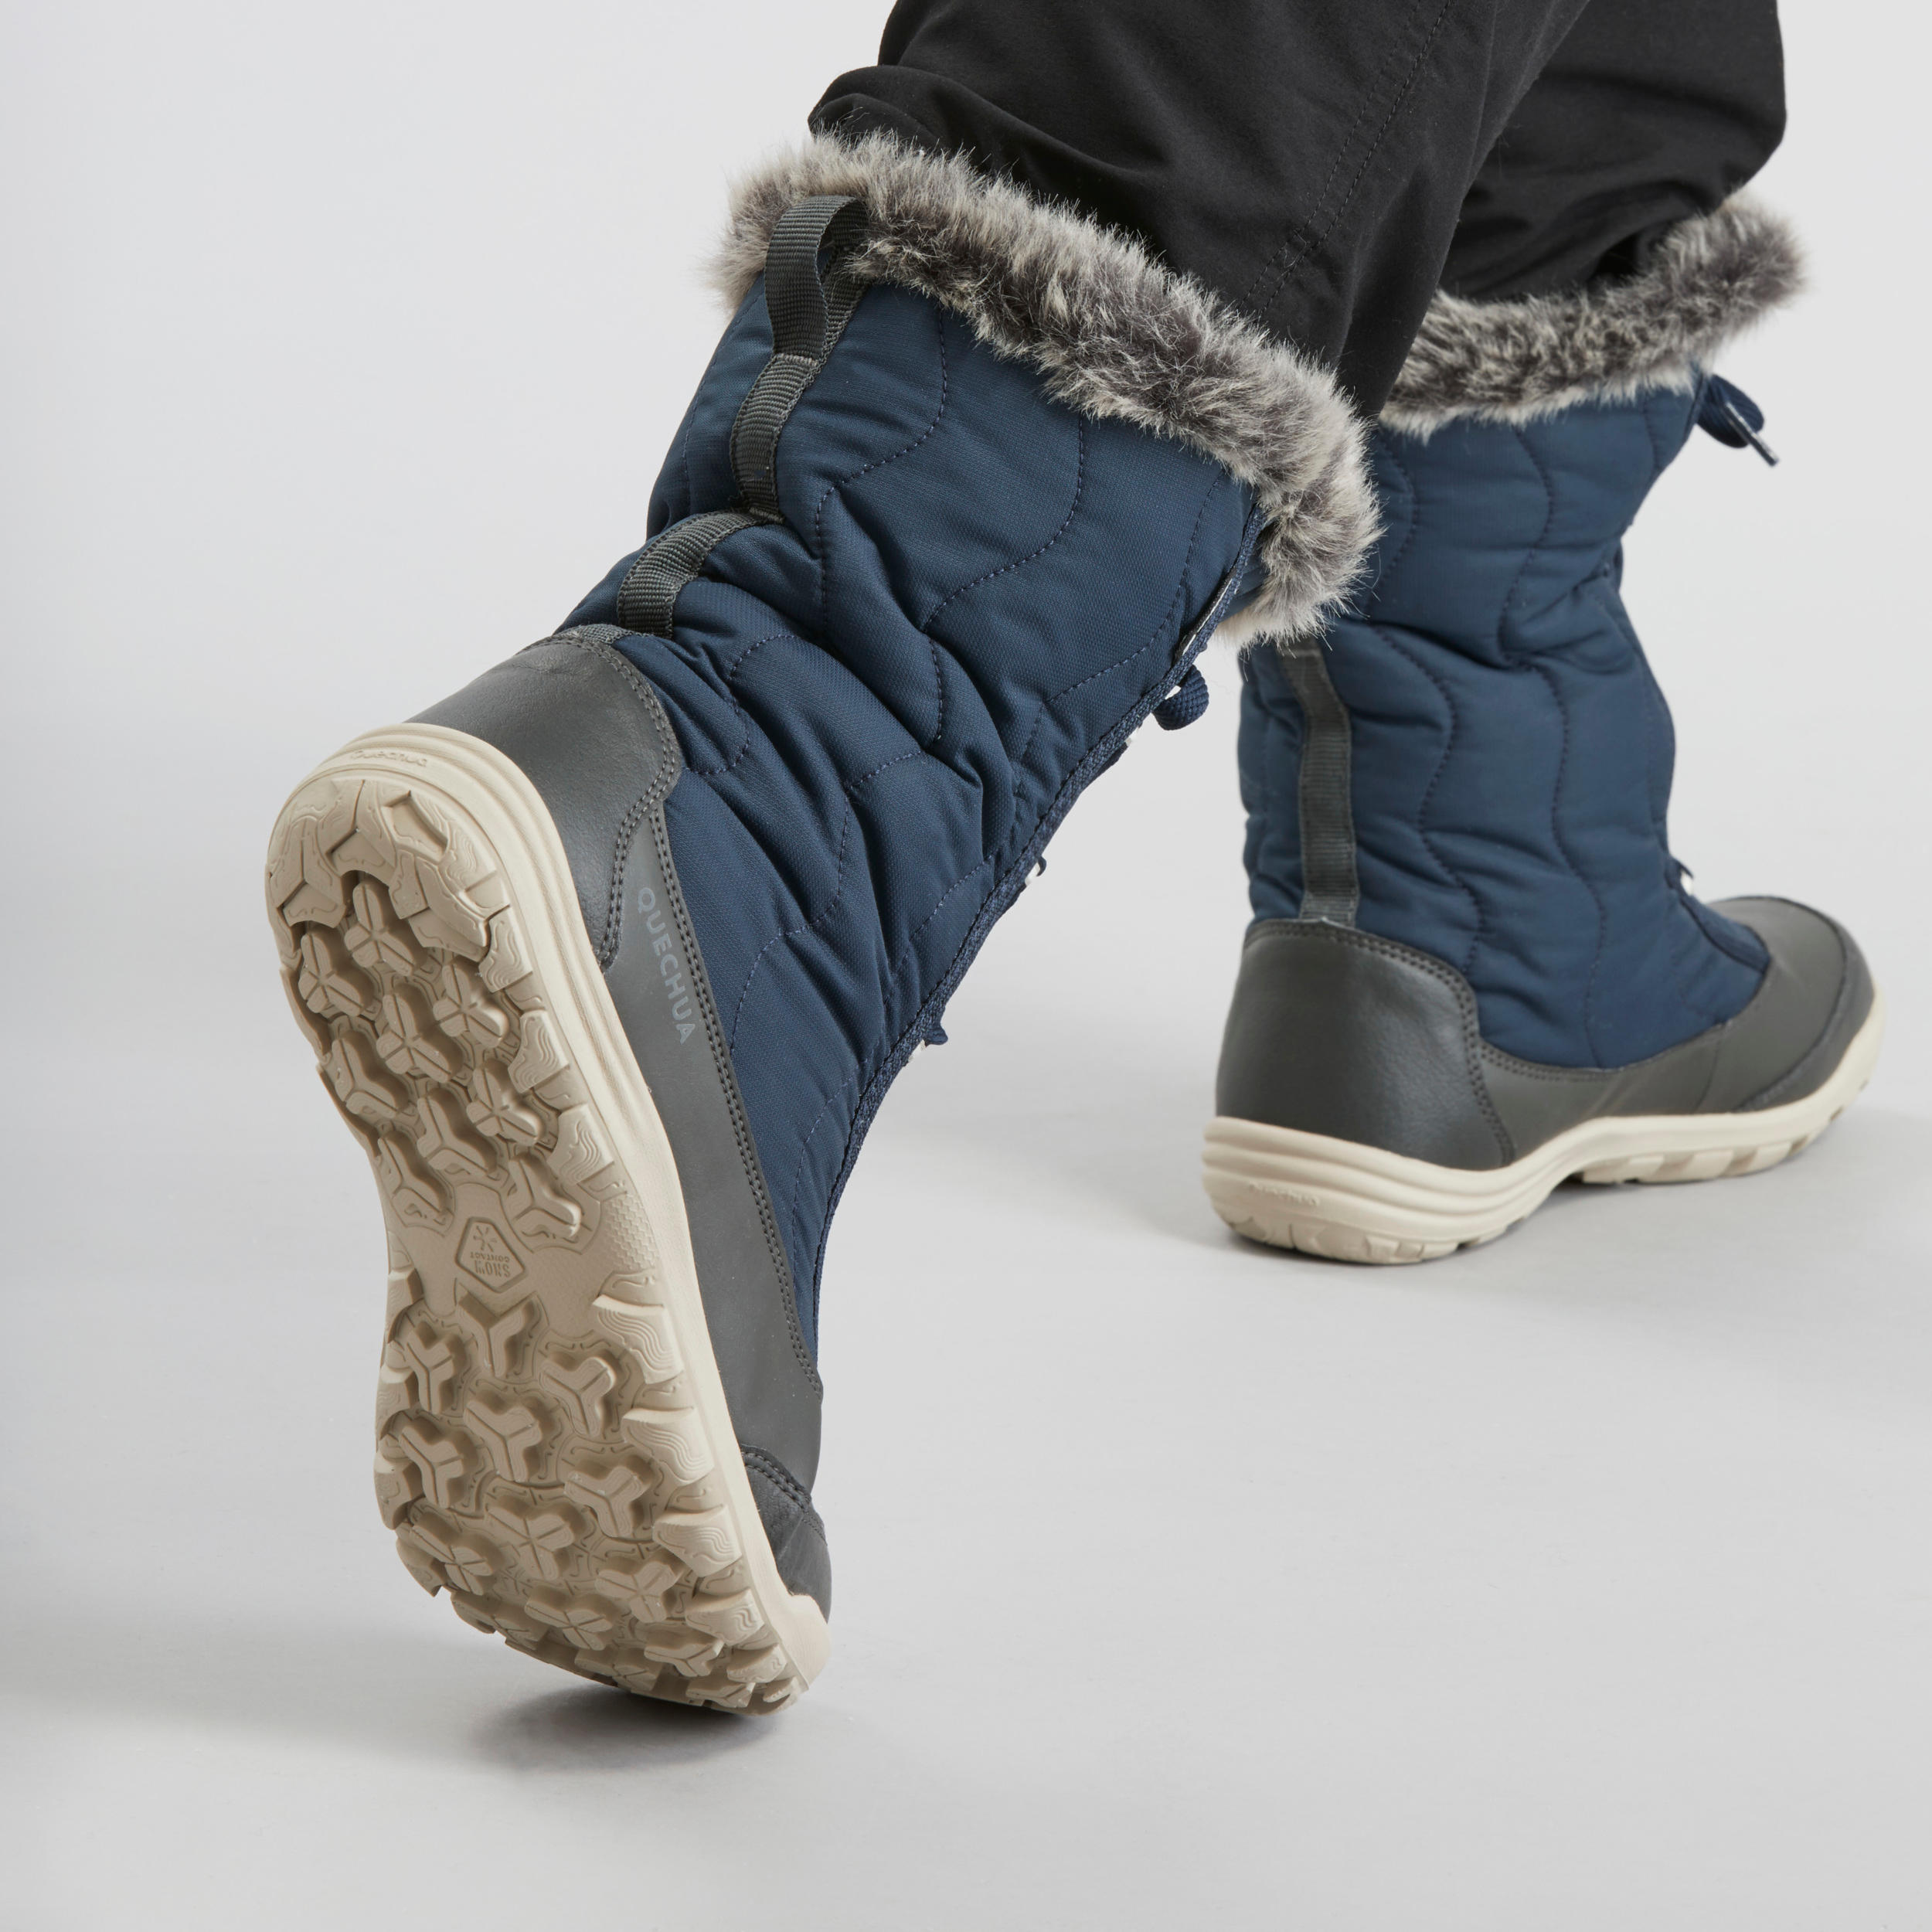 quechua women's snow boots